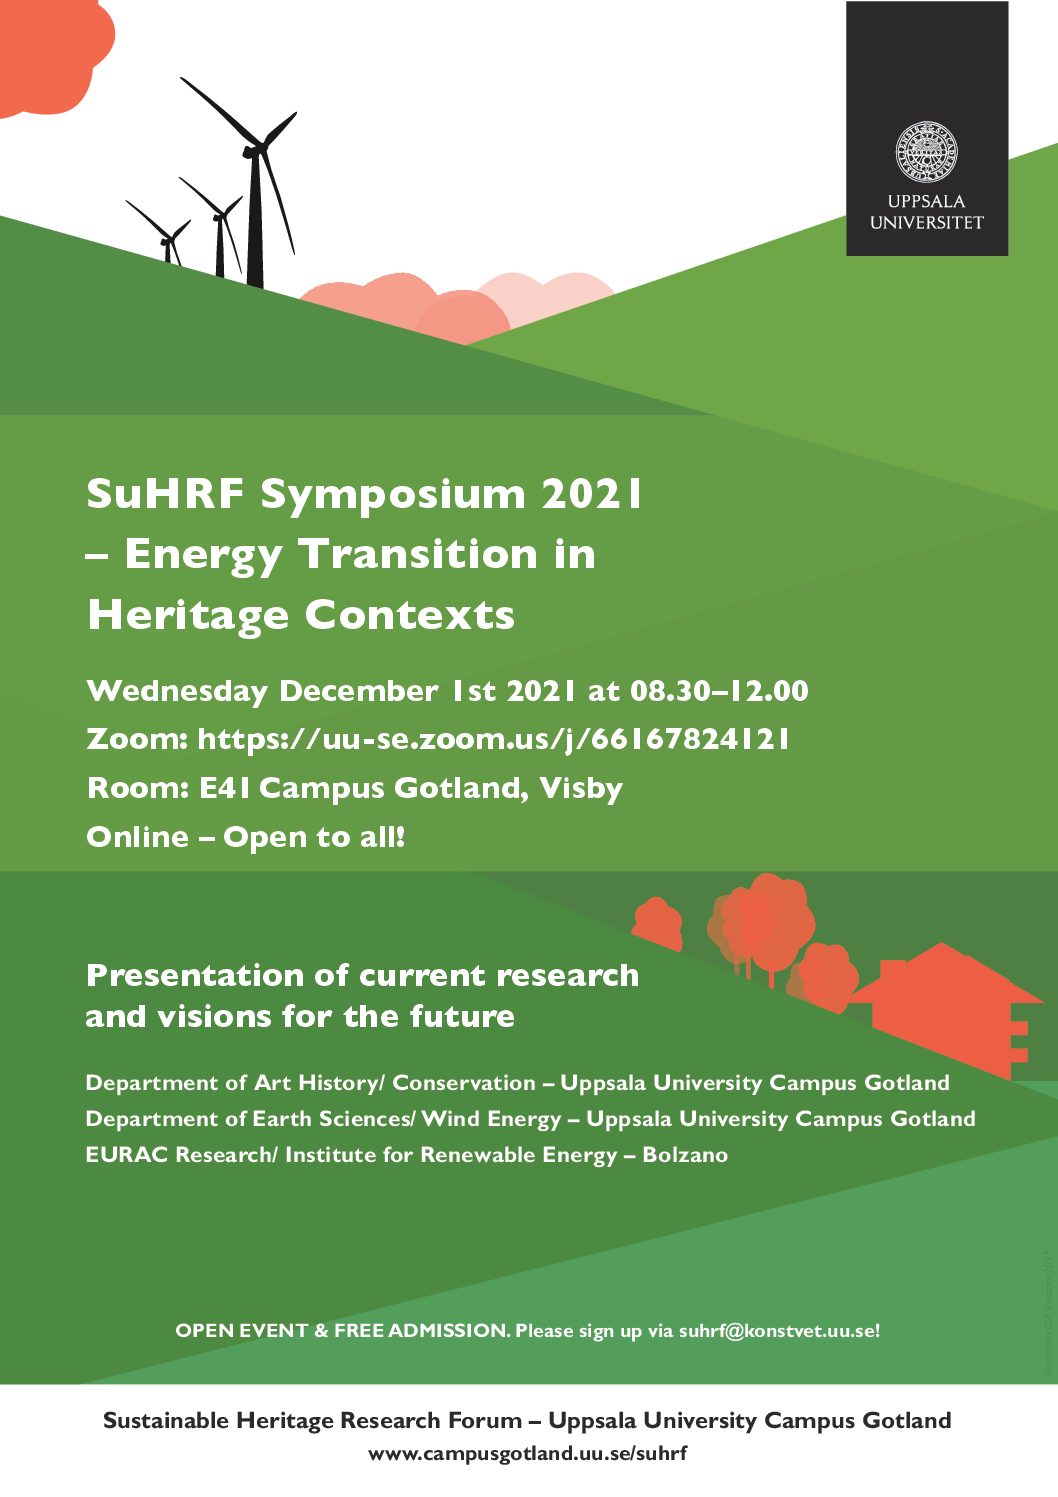 Al momento stai visualizzando SuHRF Symposium 2021 con Uppsala University